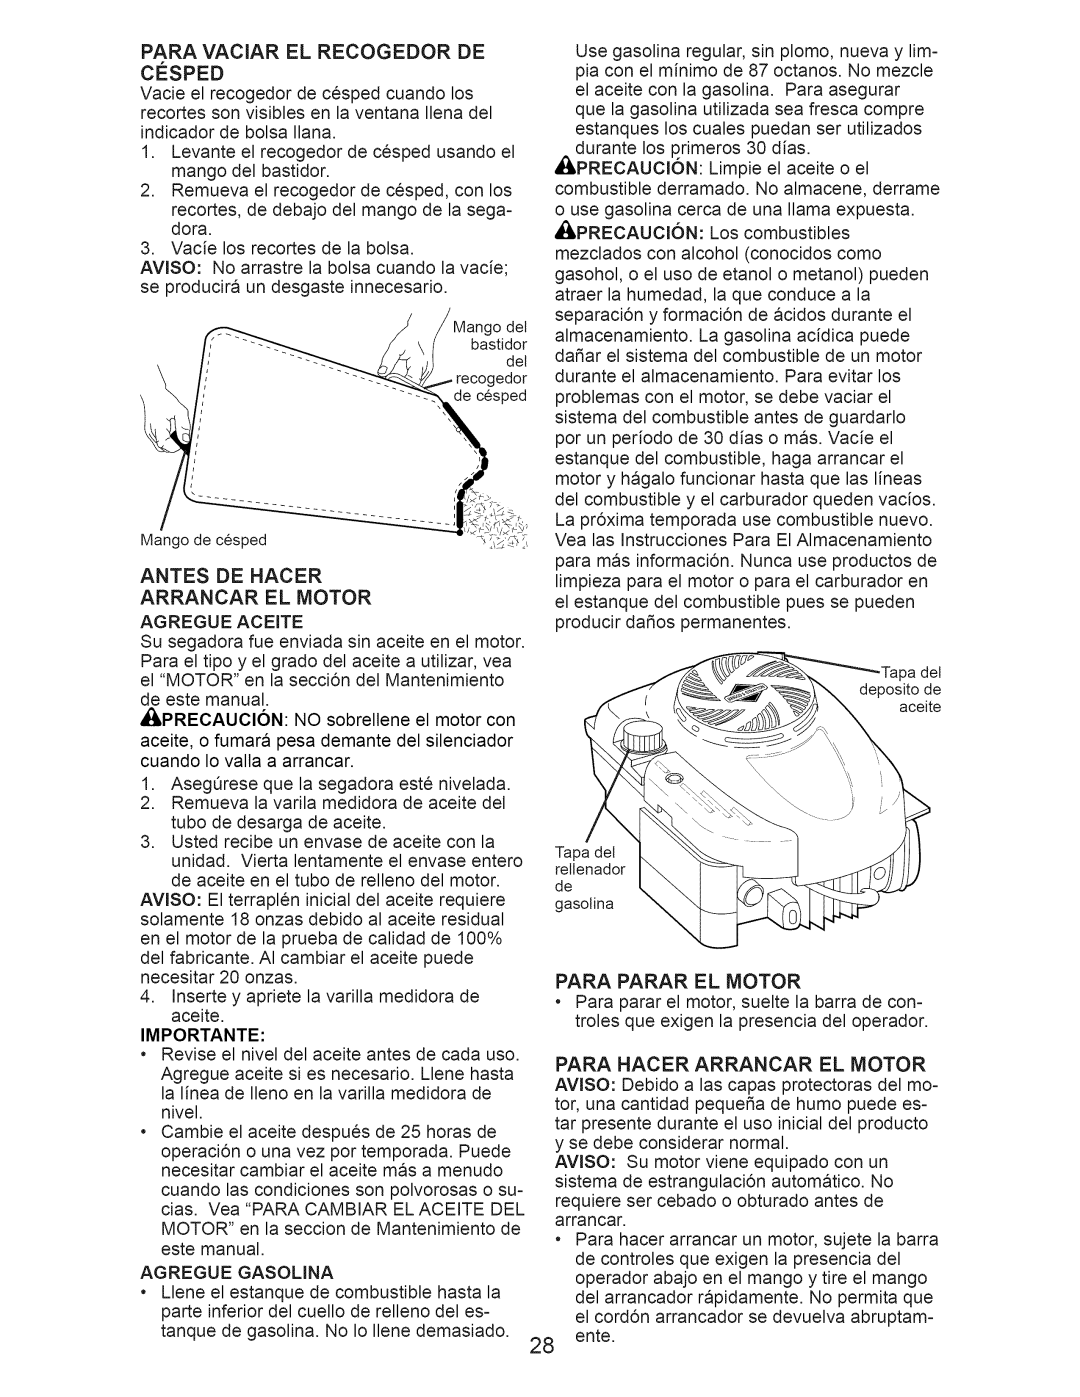 Craftsman 917.374090 manual Antes De Hacer Arrancar El Motor, Para Hacer Arrancar El Motor, Importante 